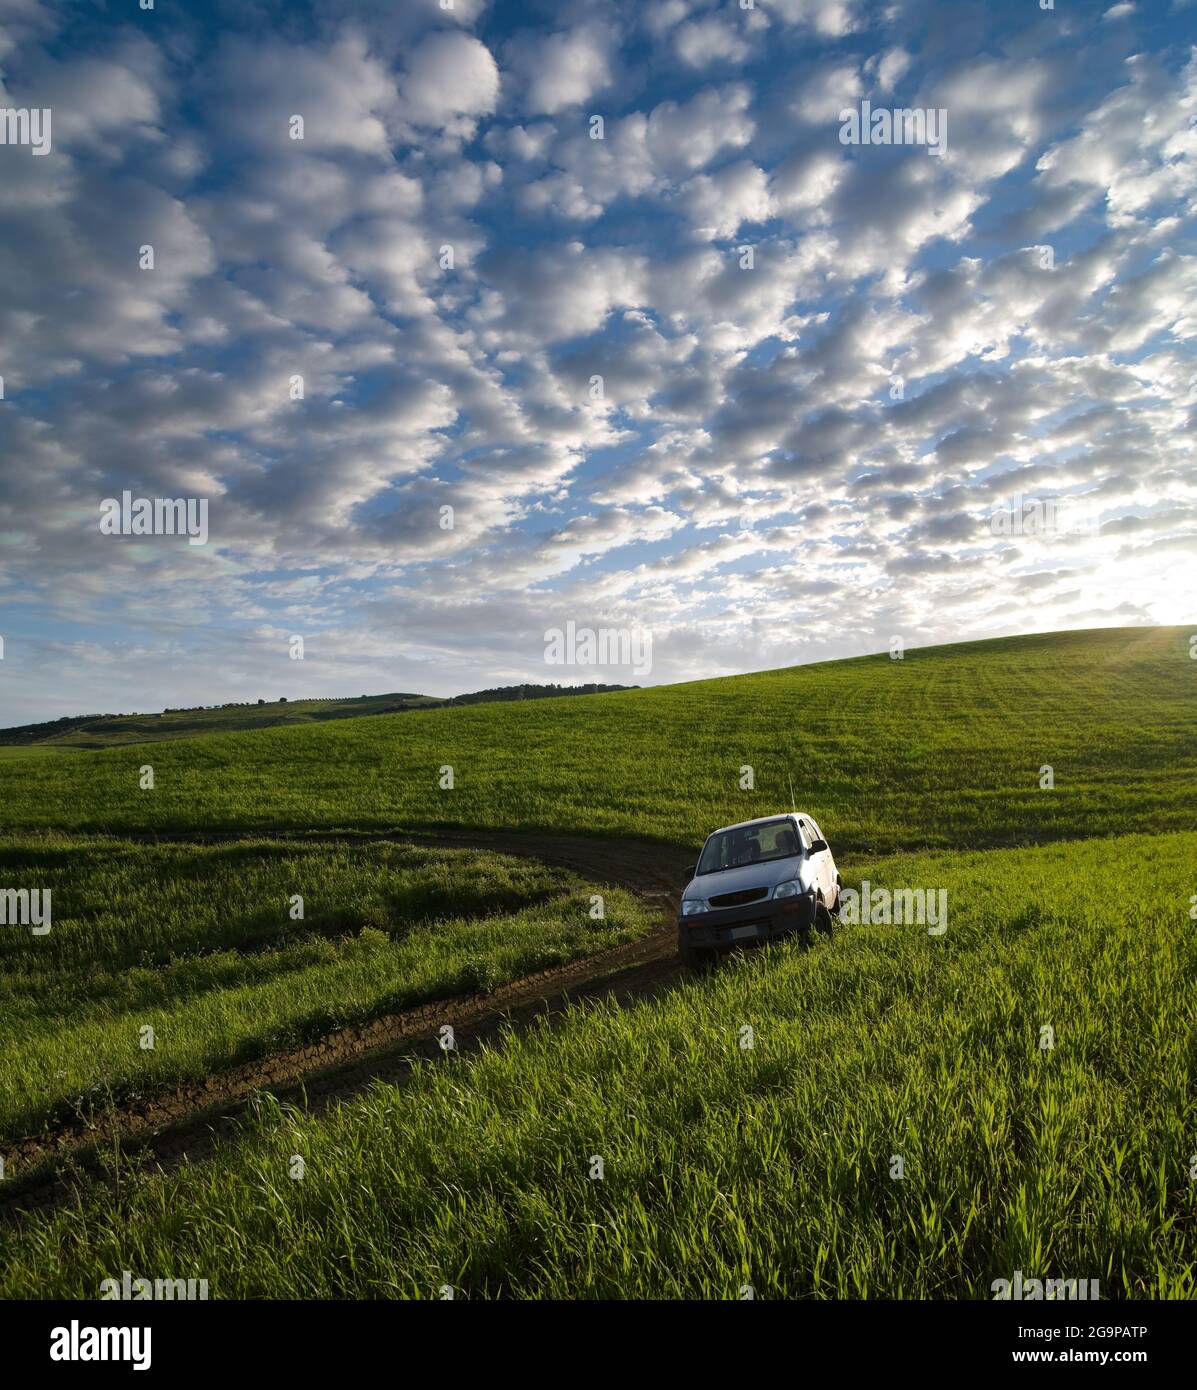 veicolo fuori strada in un campo di erba verde contro il paesaggio nuvoloso al tramonto Foto Stock